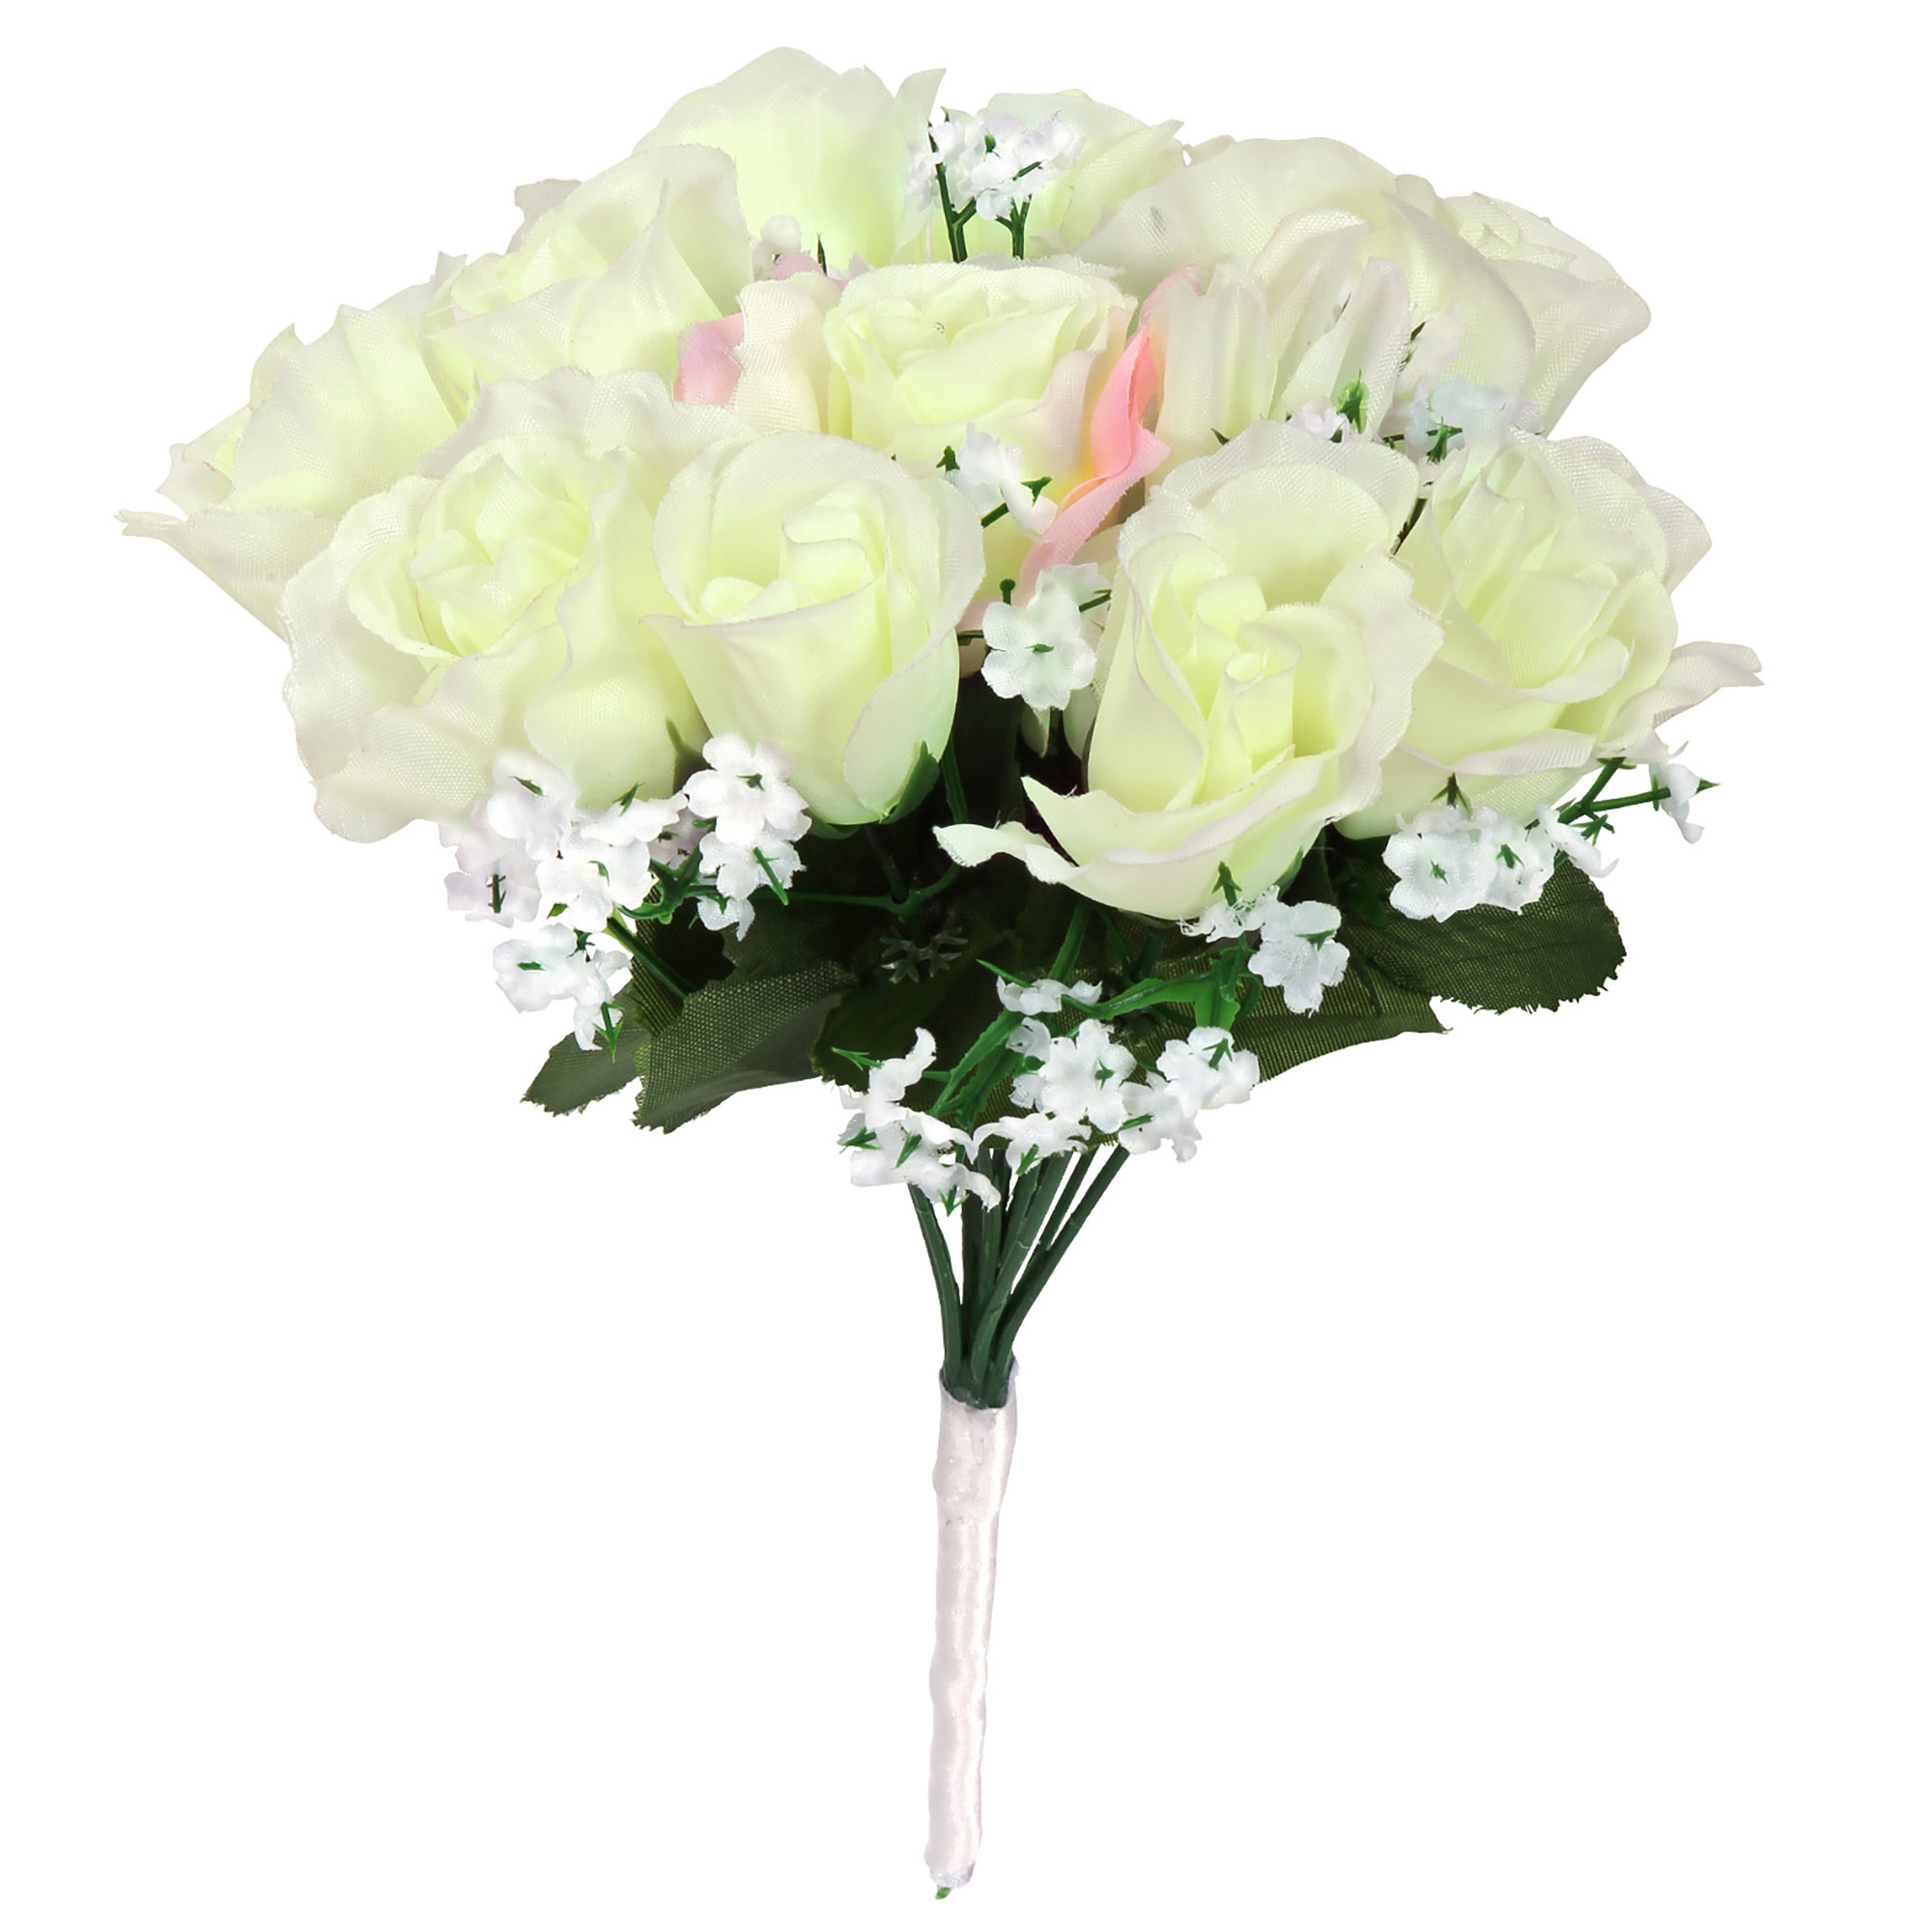 Bruidsboeket witte rozen leuk voor vrijgezellenfeest